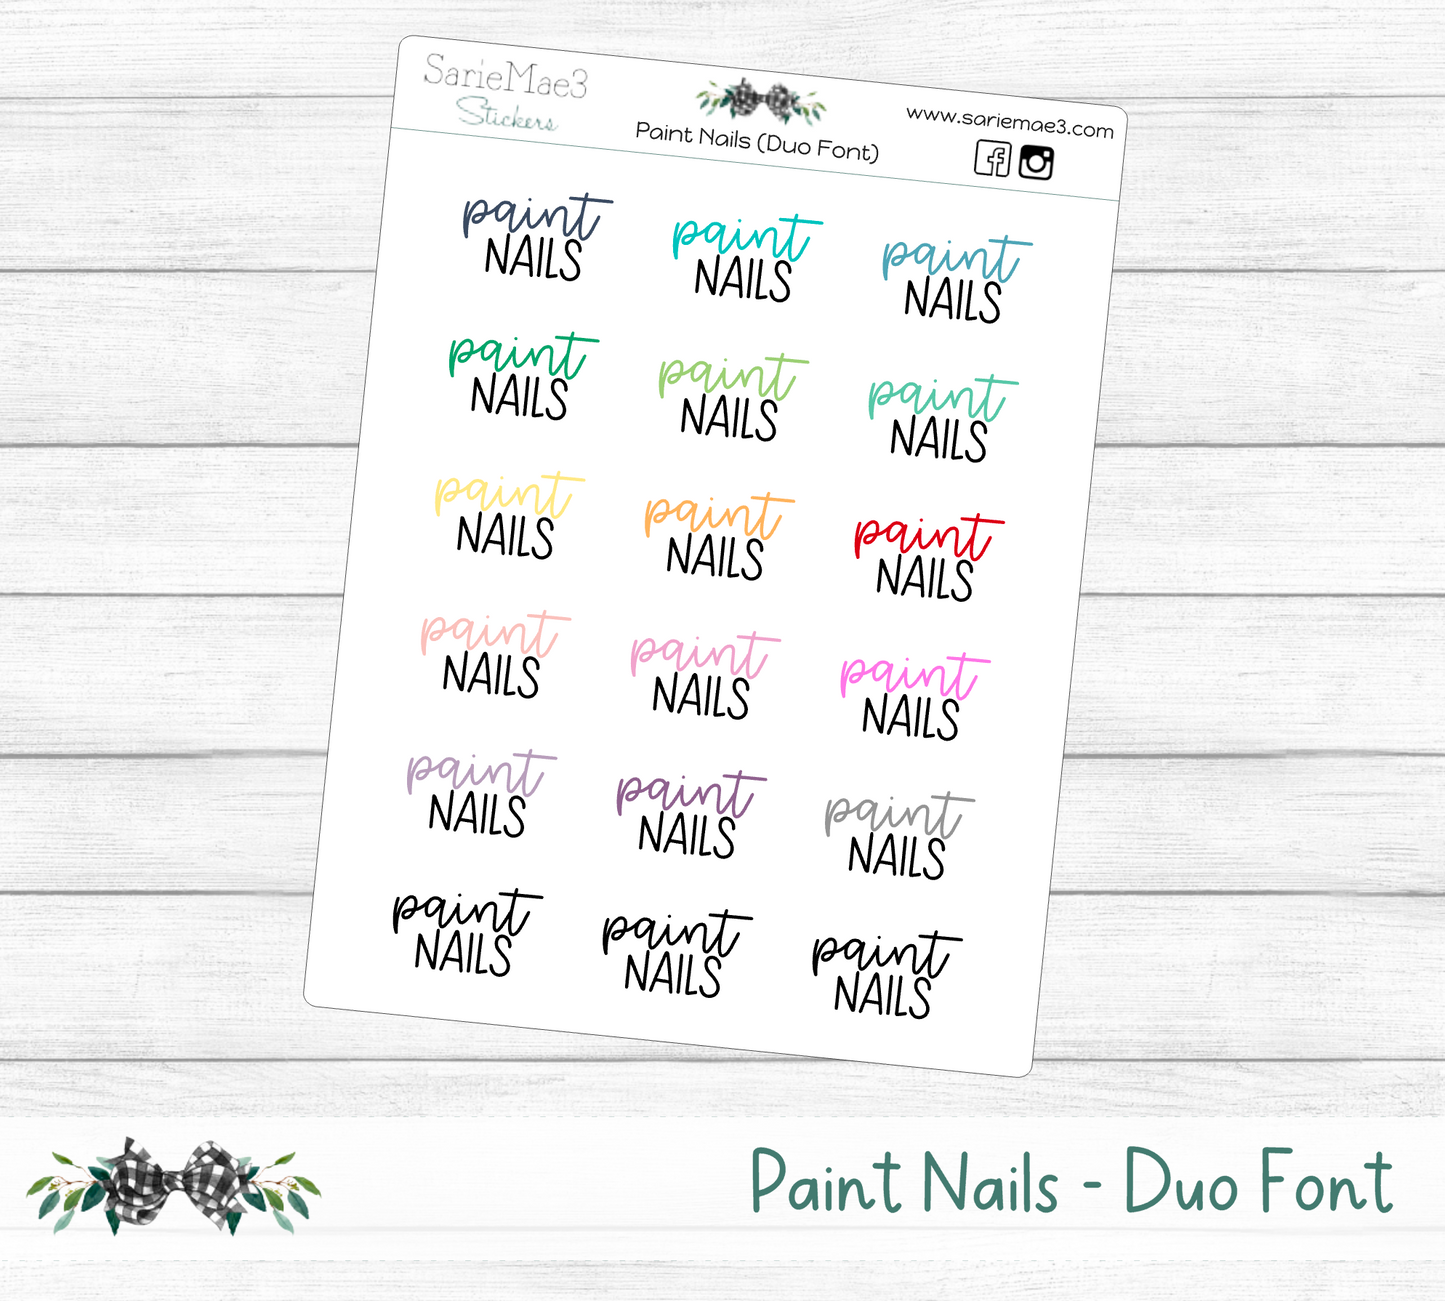 Paint Nails (Duo Font)